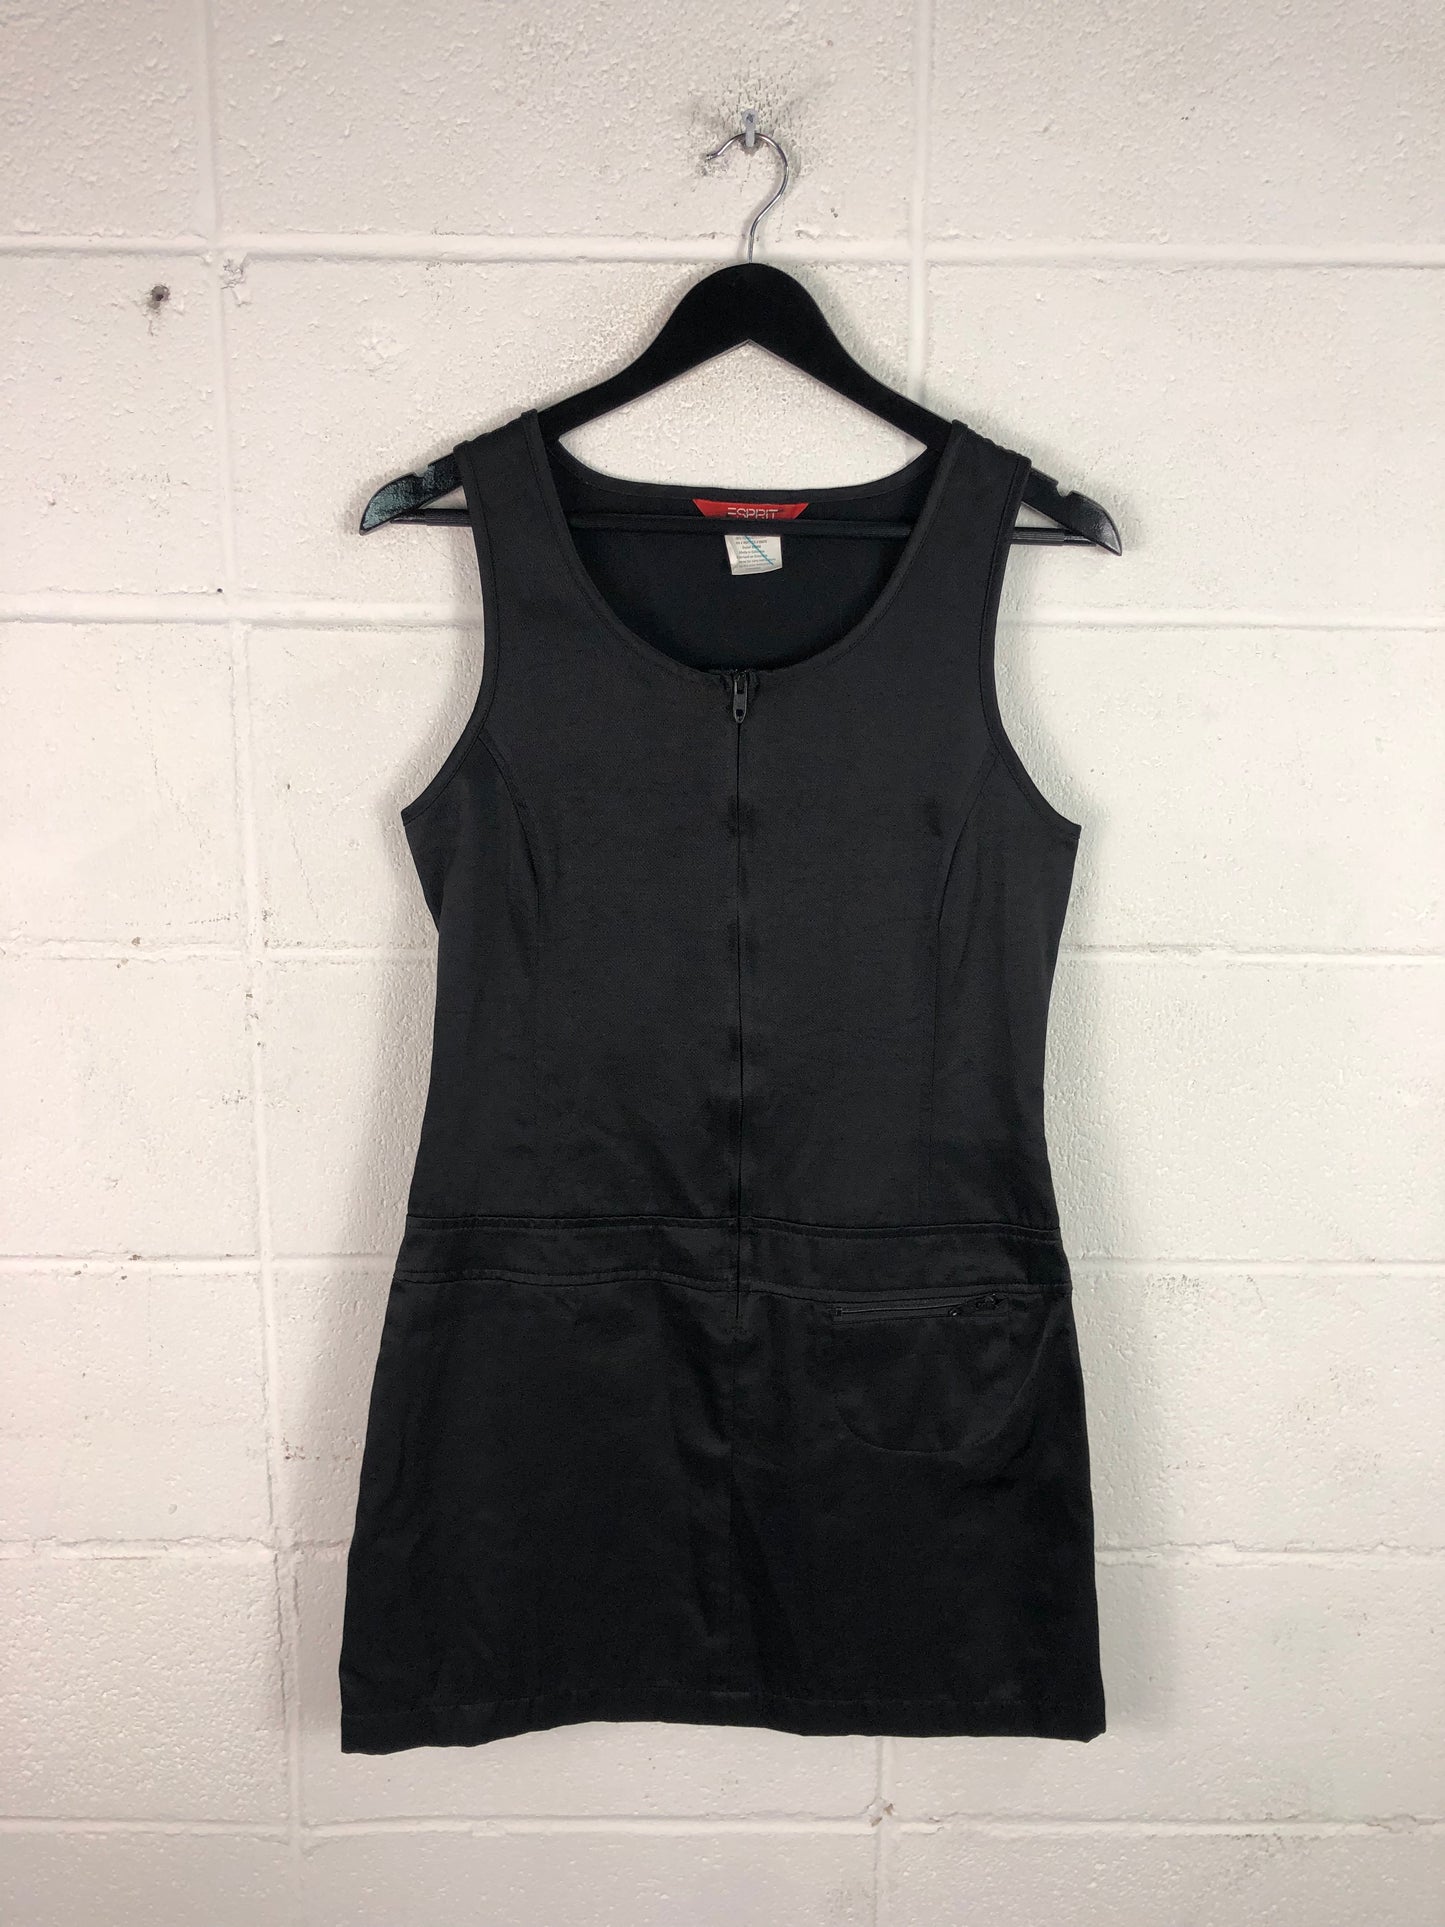 VTG Esprit Litte Black Dress Sz S/M